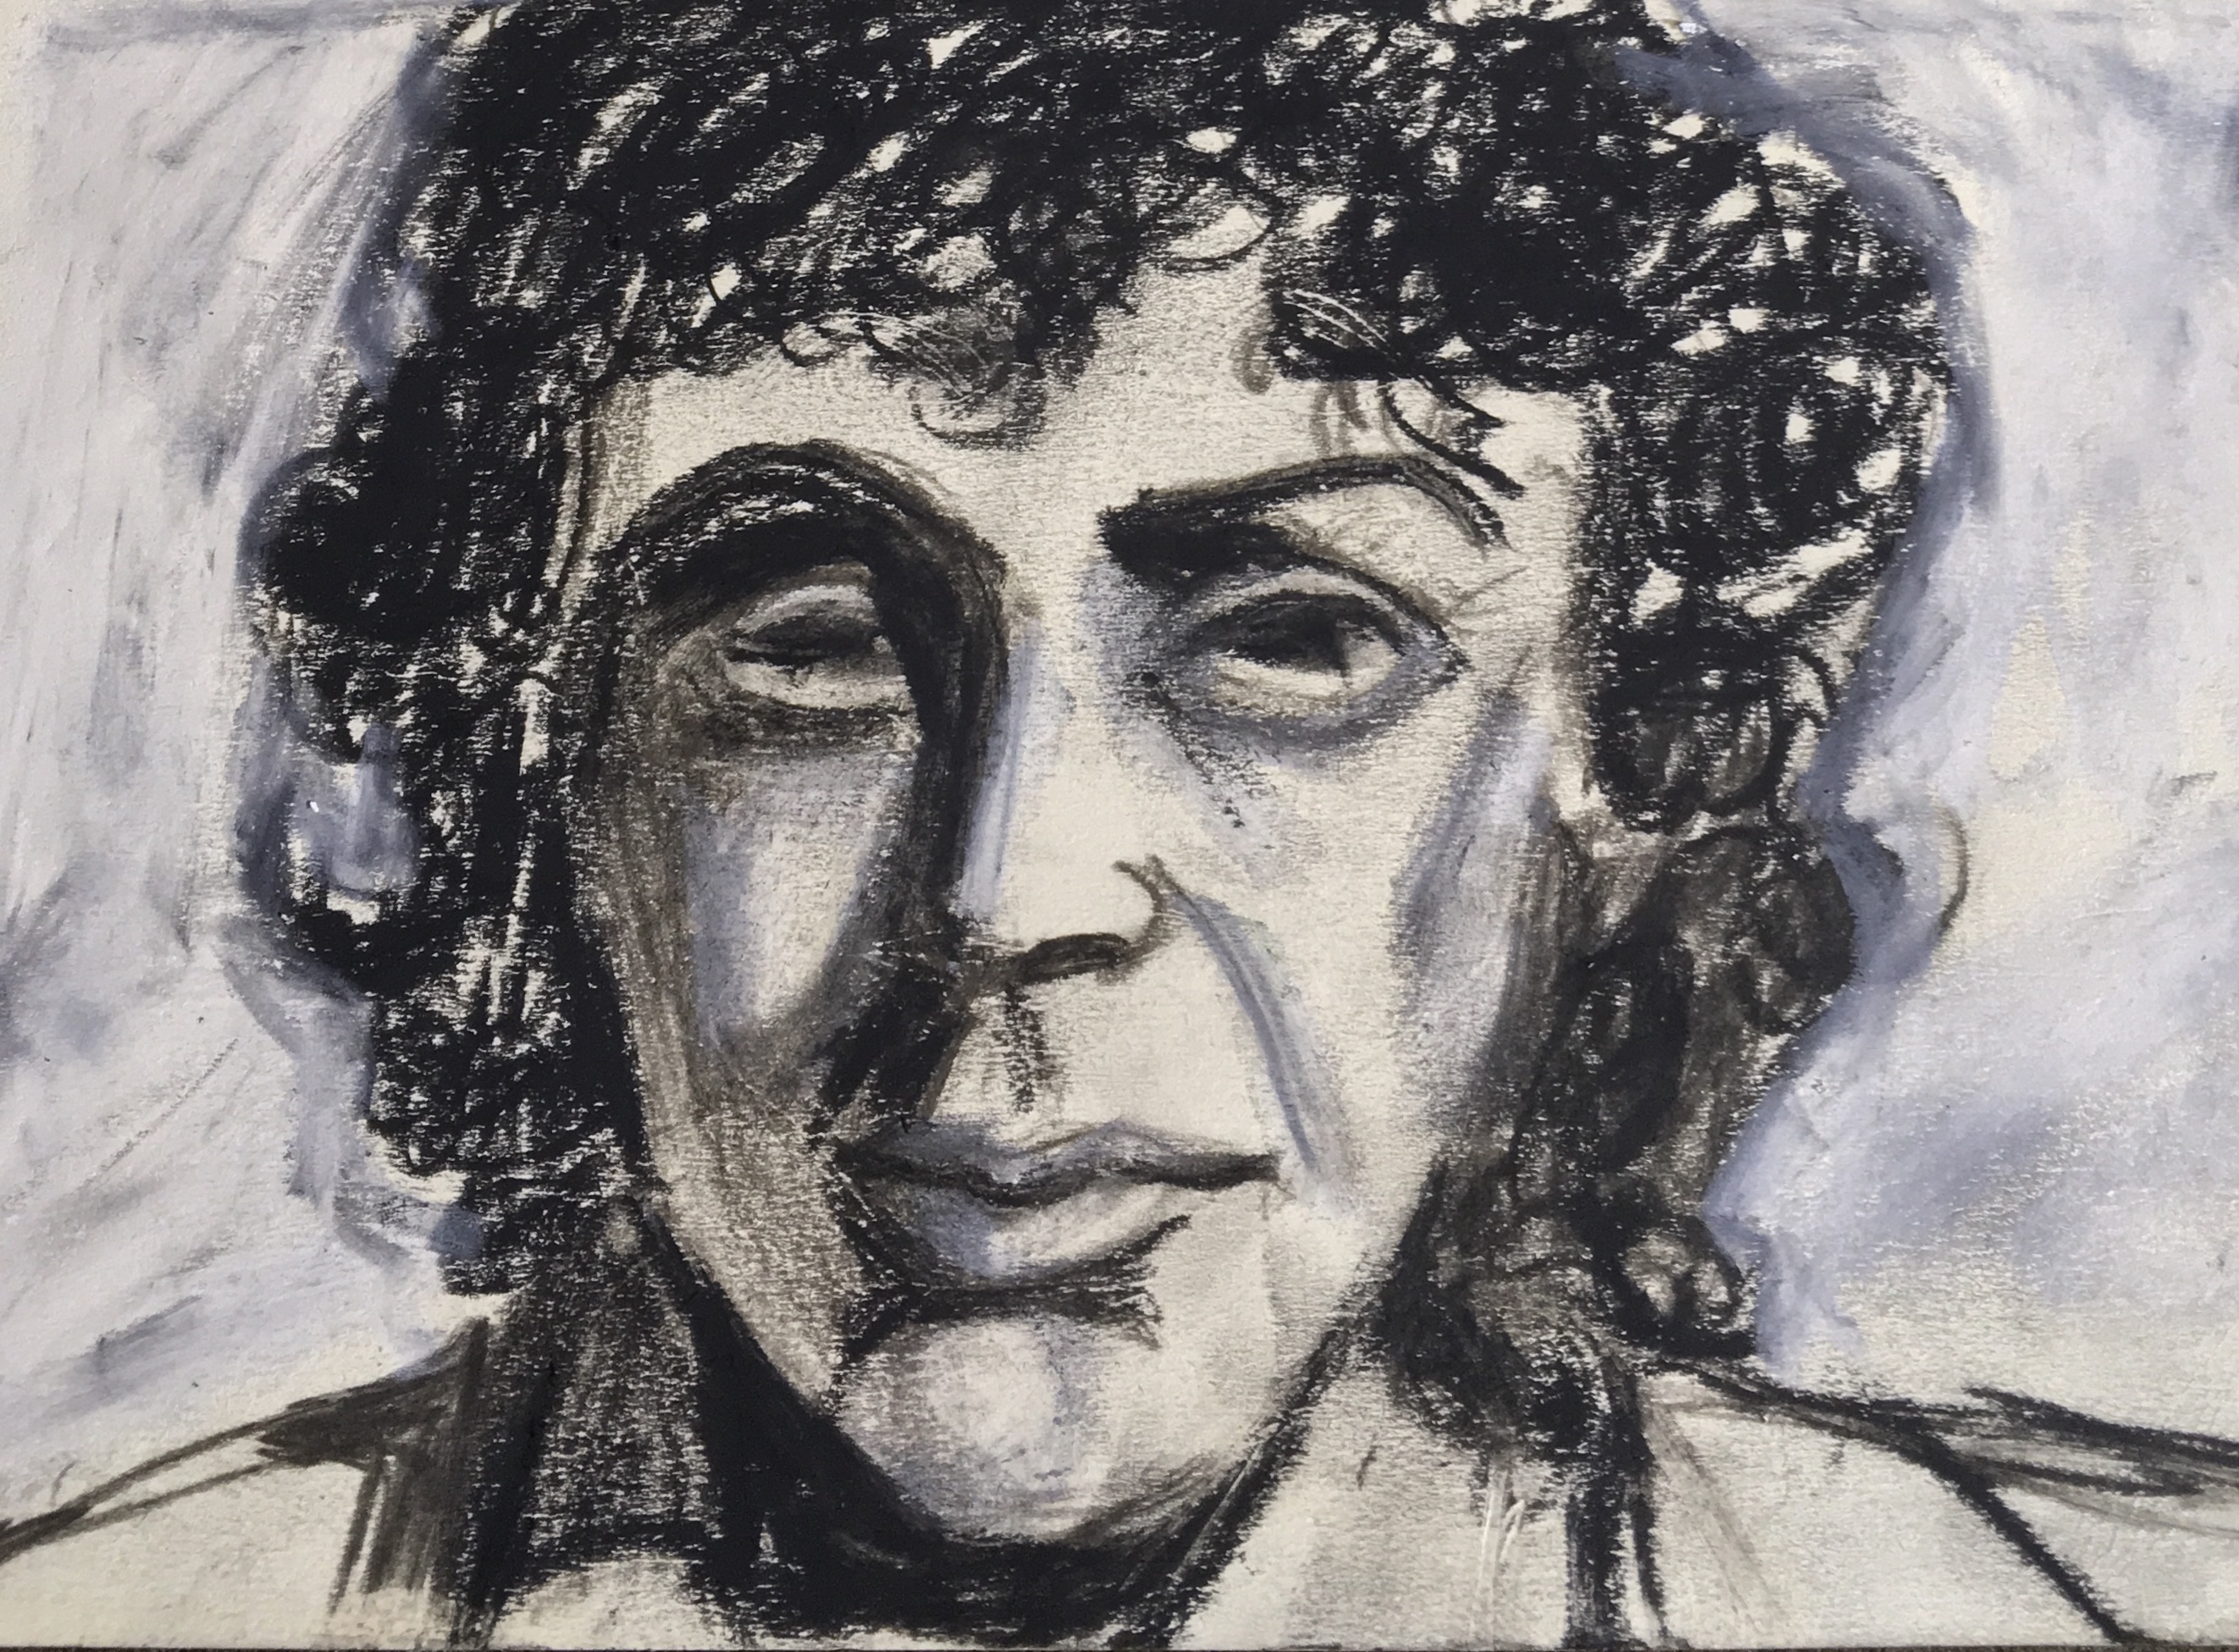 Edith Piaf portrait